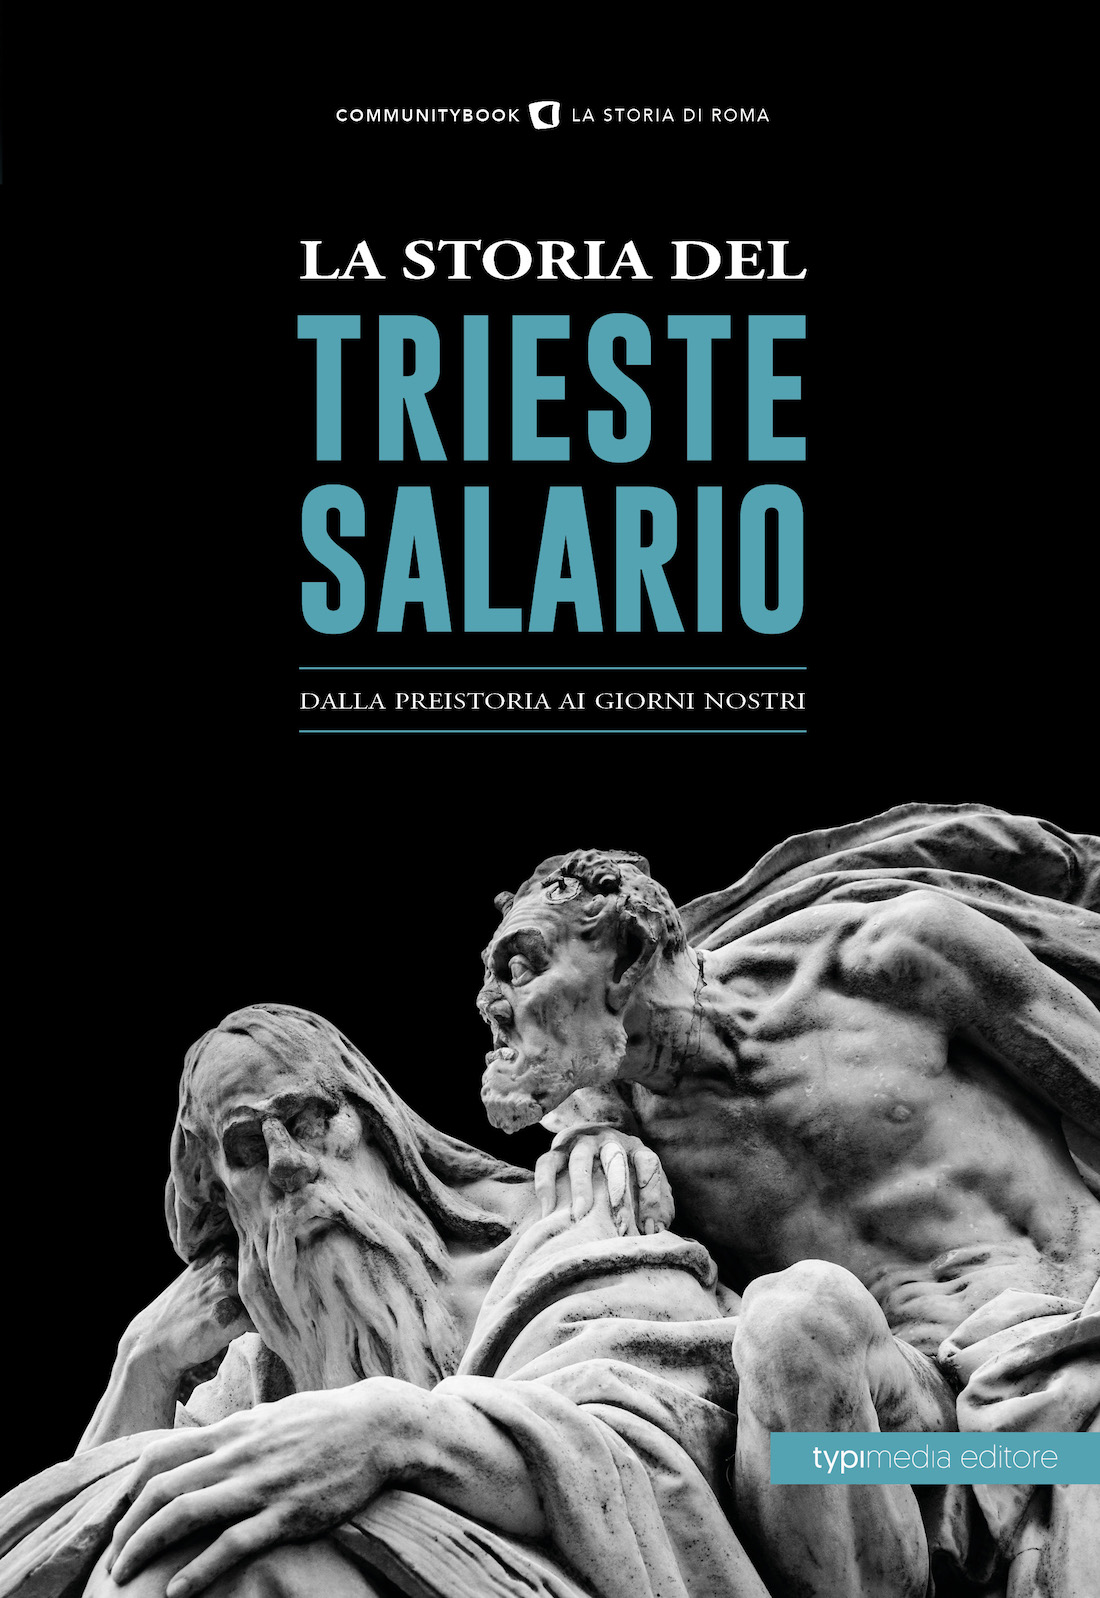 "La Storia del Trieste-Salario"